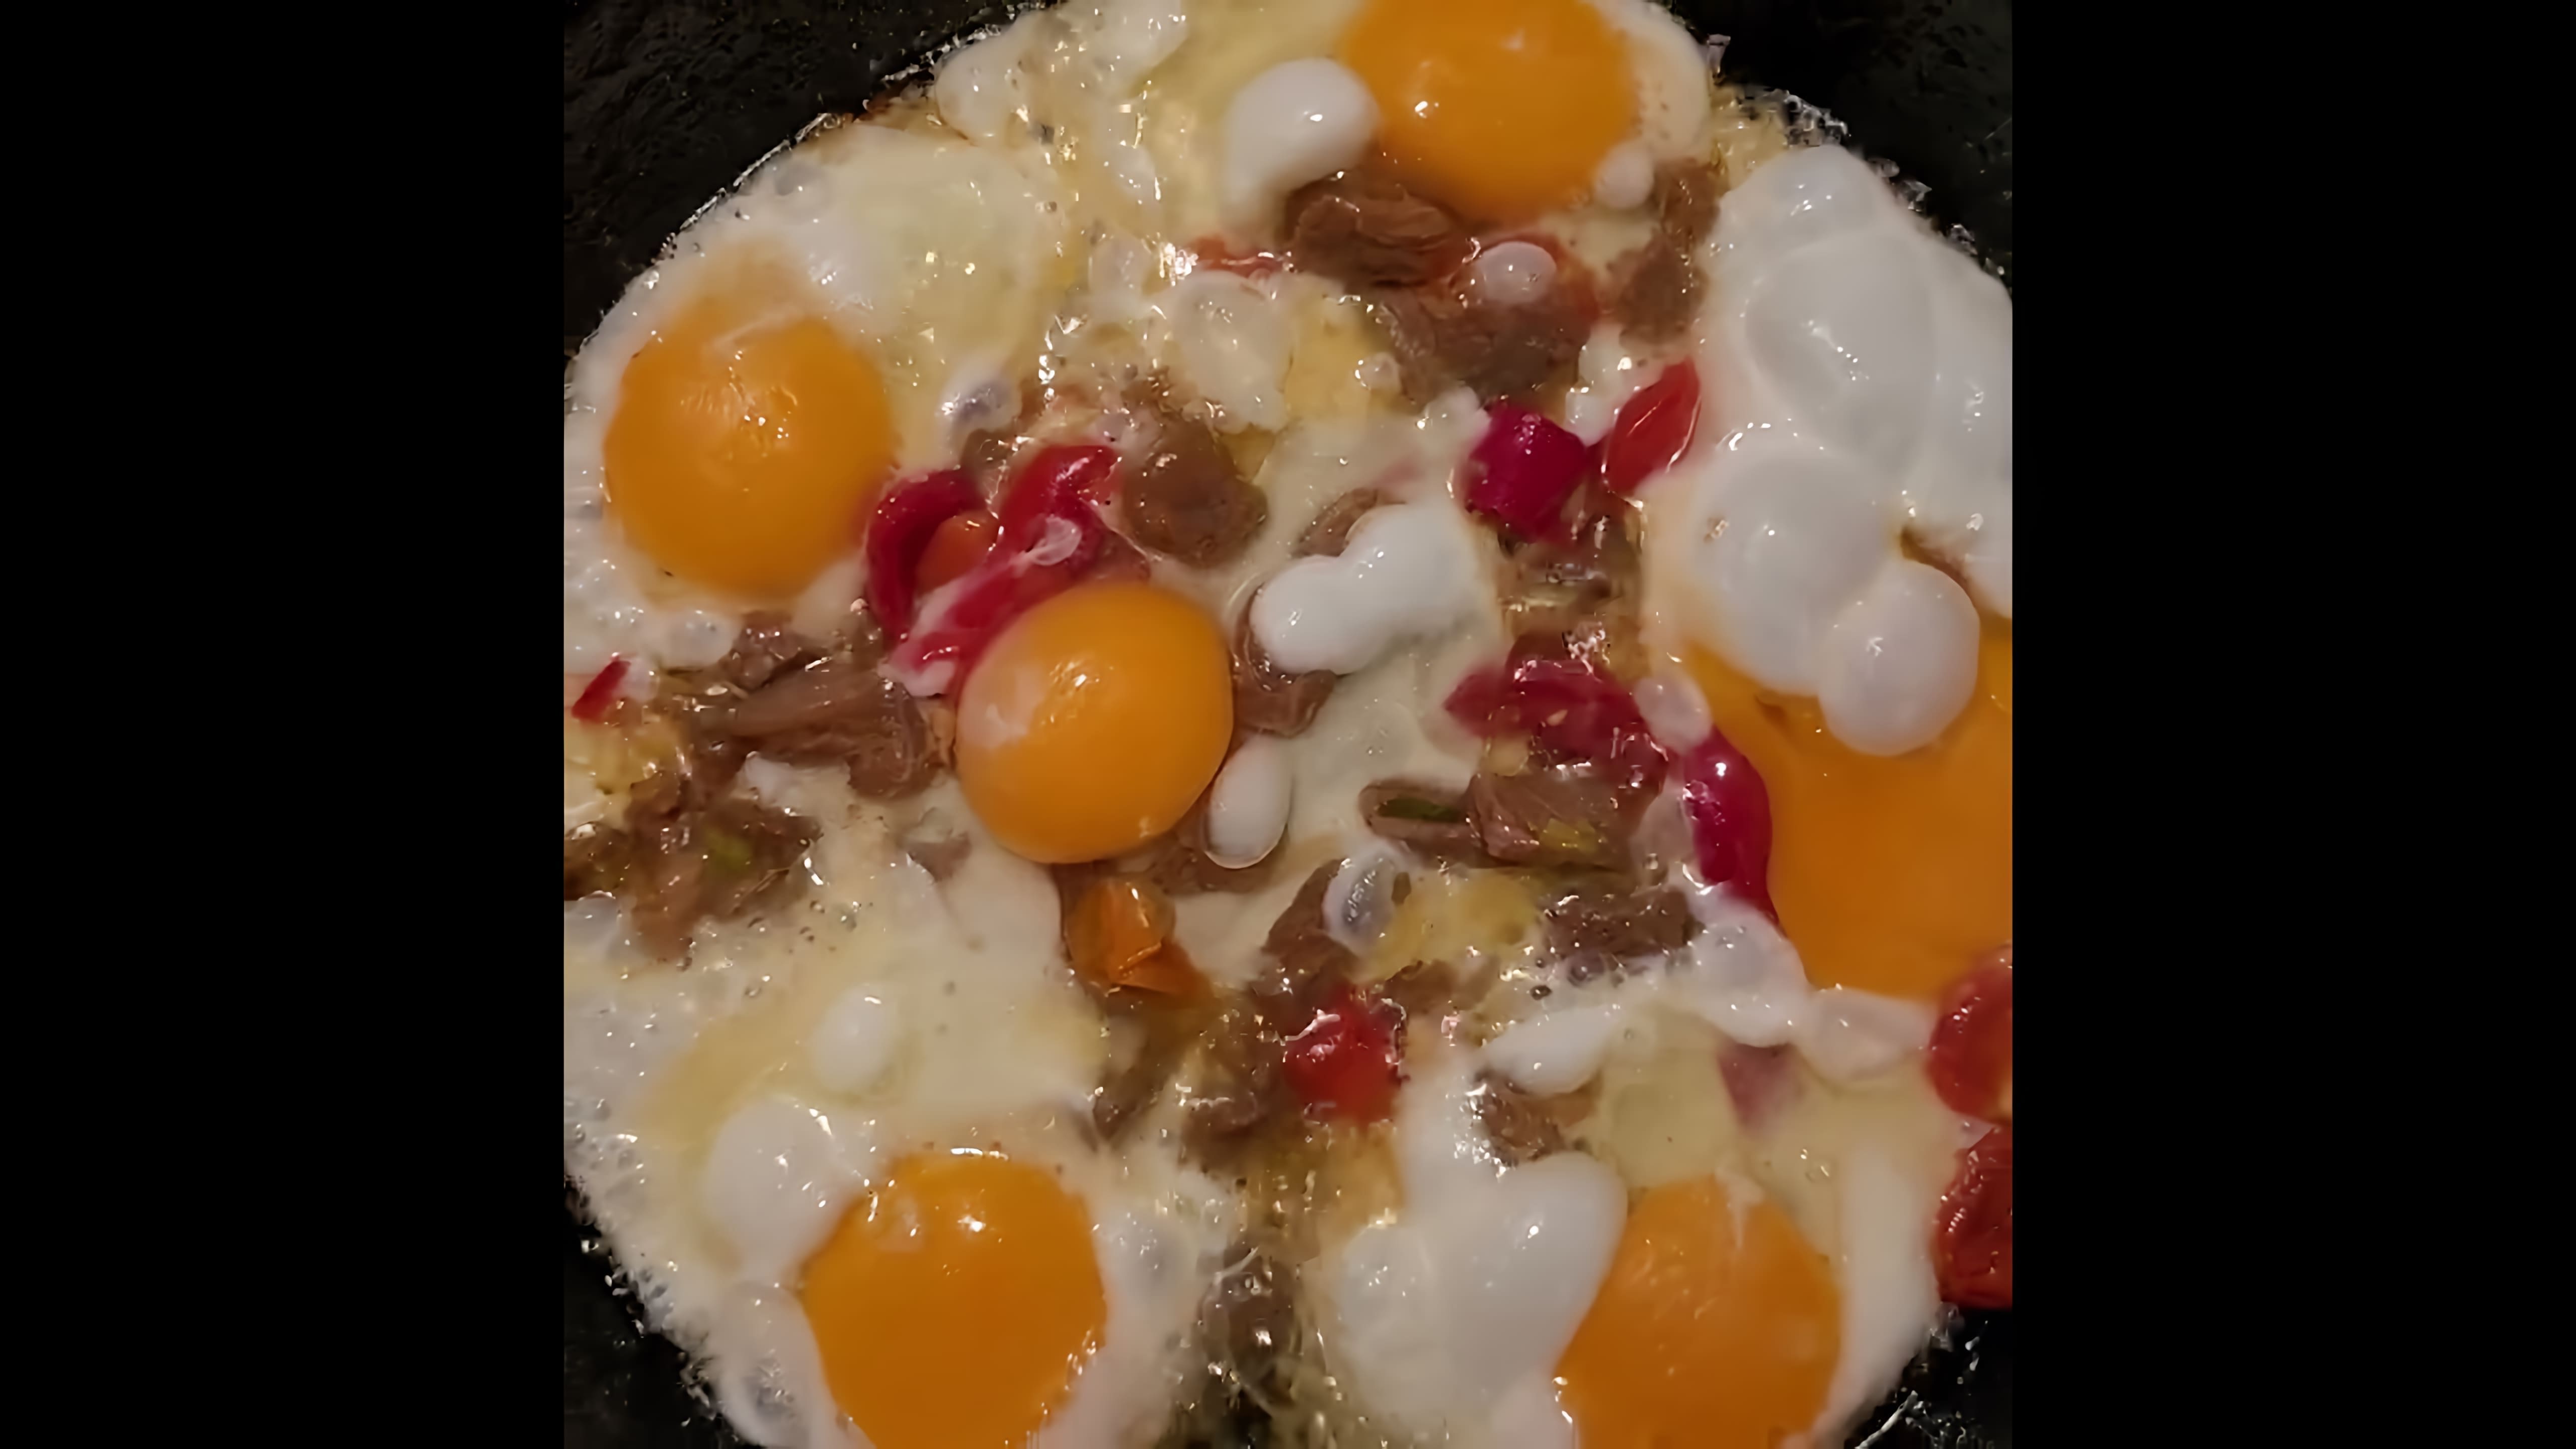 Мой легкий завтрак из 6 цельных яиц и рубленной говядины! Добавляем кетчуп, майонез, хрен и горчицу